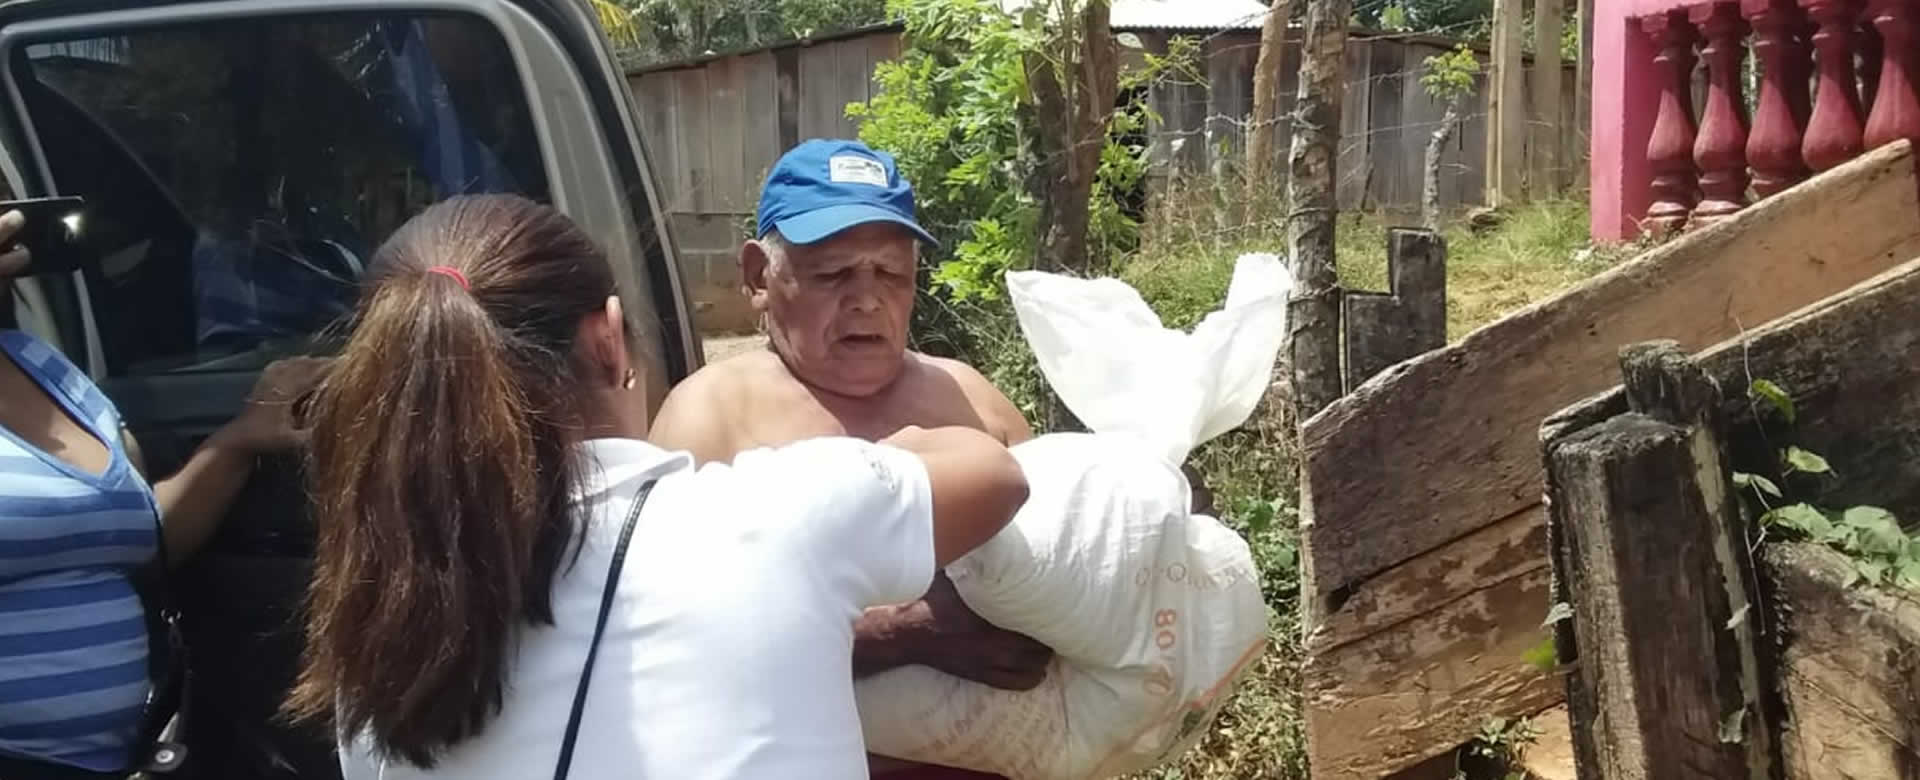 Promotoría Solidaria entrega paquetes alimenticios a familias de La Libertad, Chontales